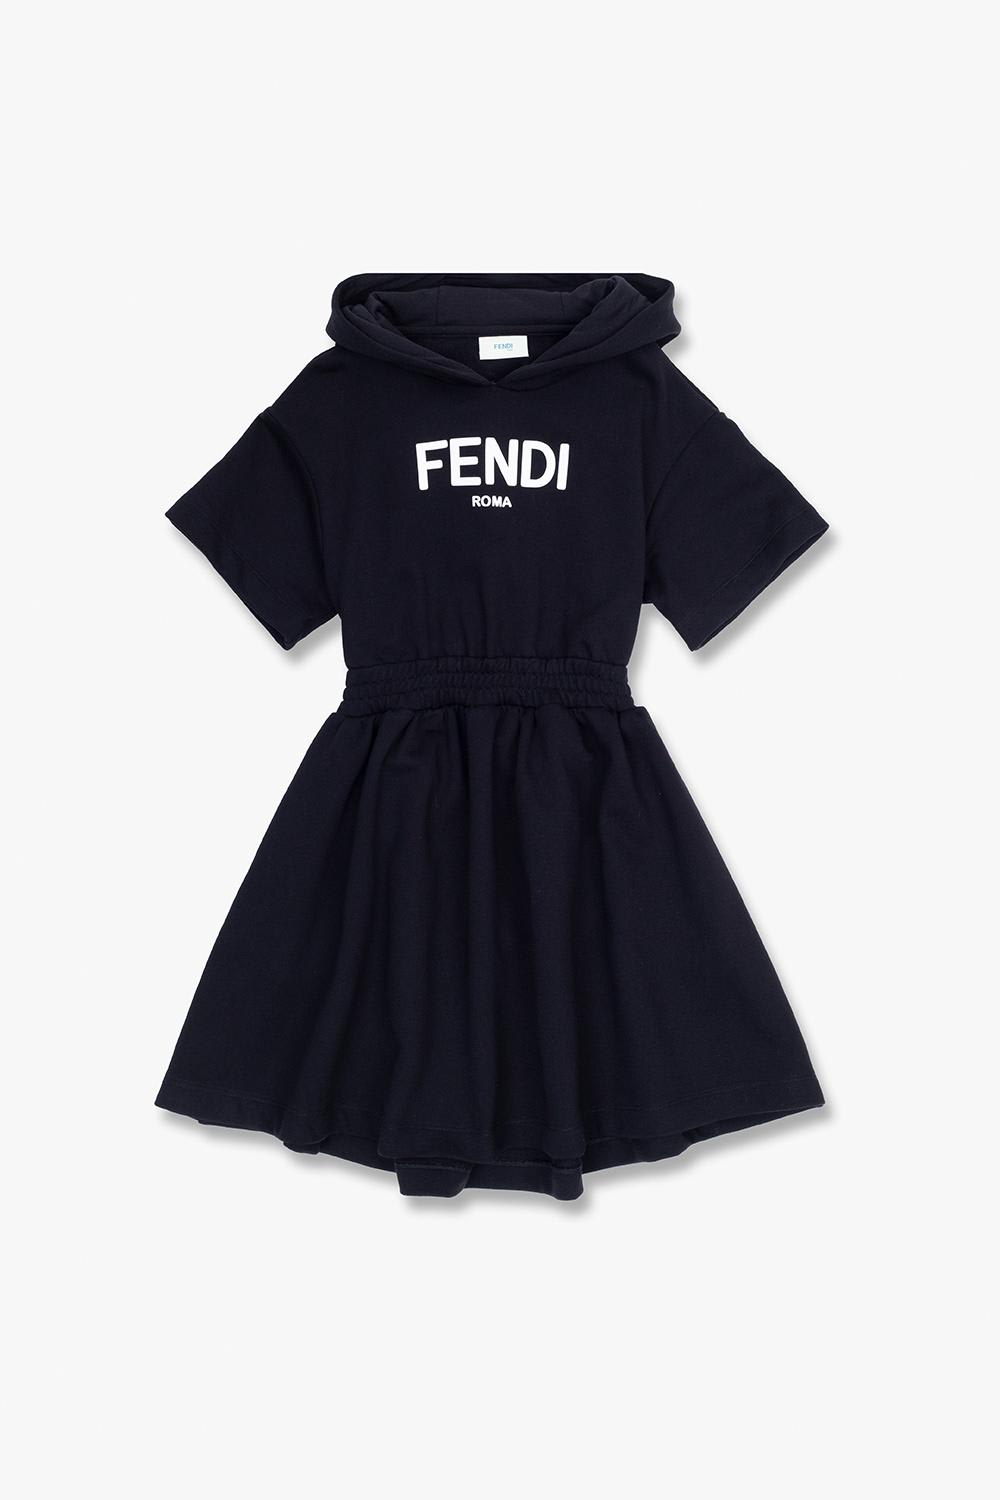 FENDI Dresses for Girls | ModeSens